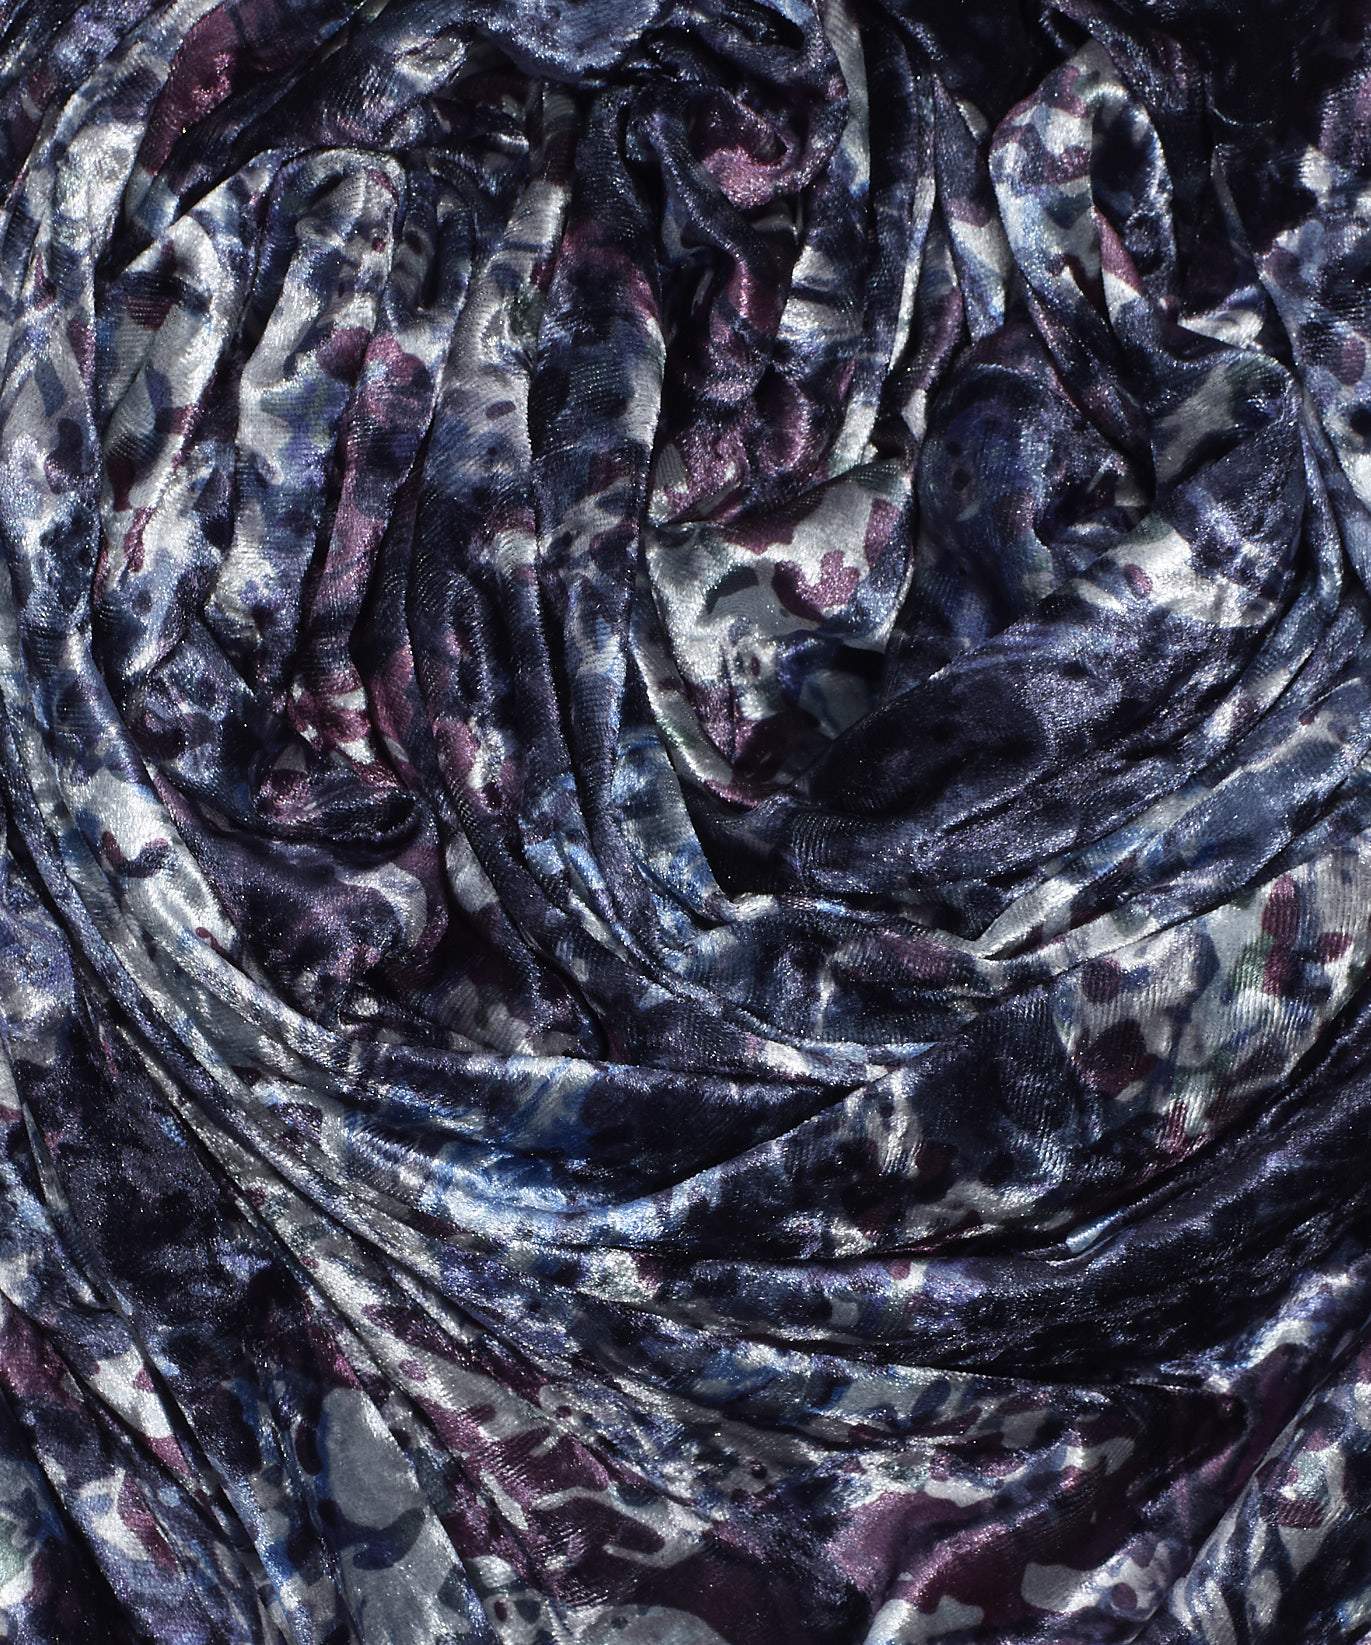 Celestial Swirl Velvet Tubular Wrap in color Charcoal